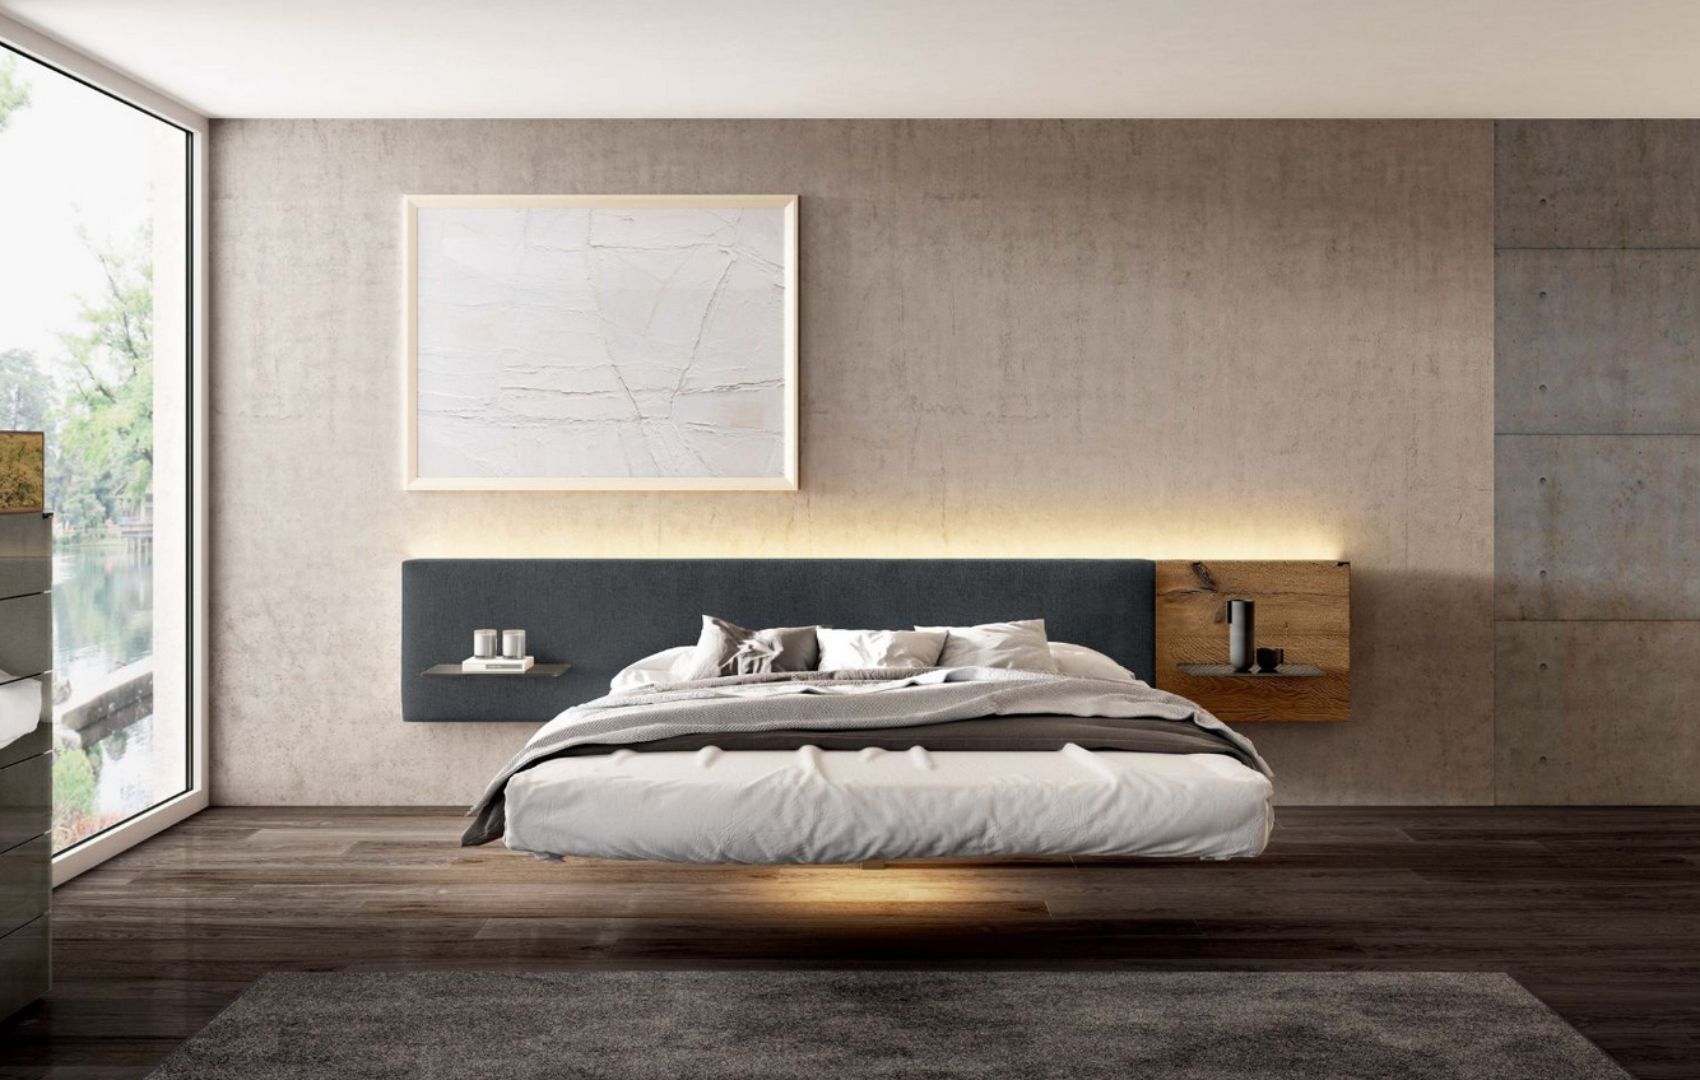 LAGO Fluttua Bed - 5 modern floating beds